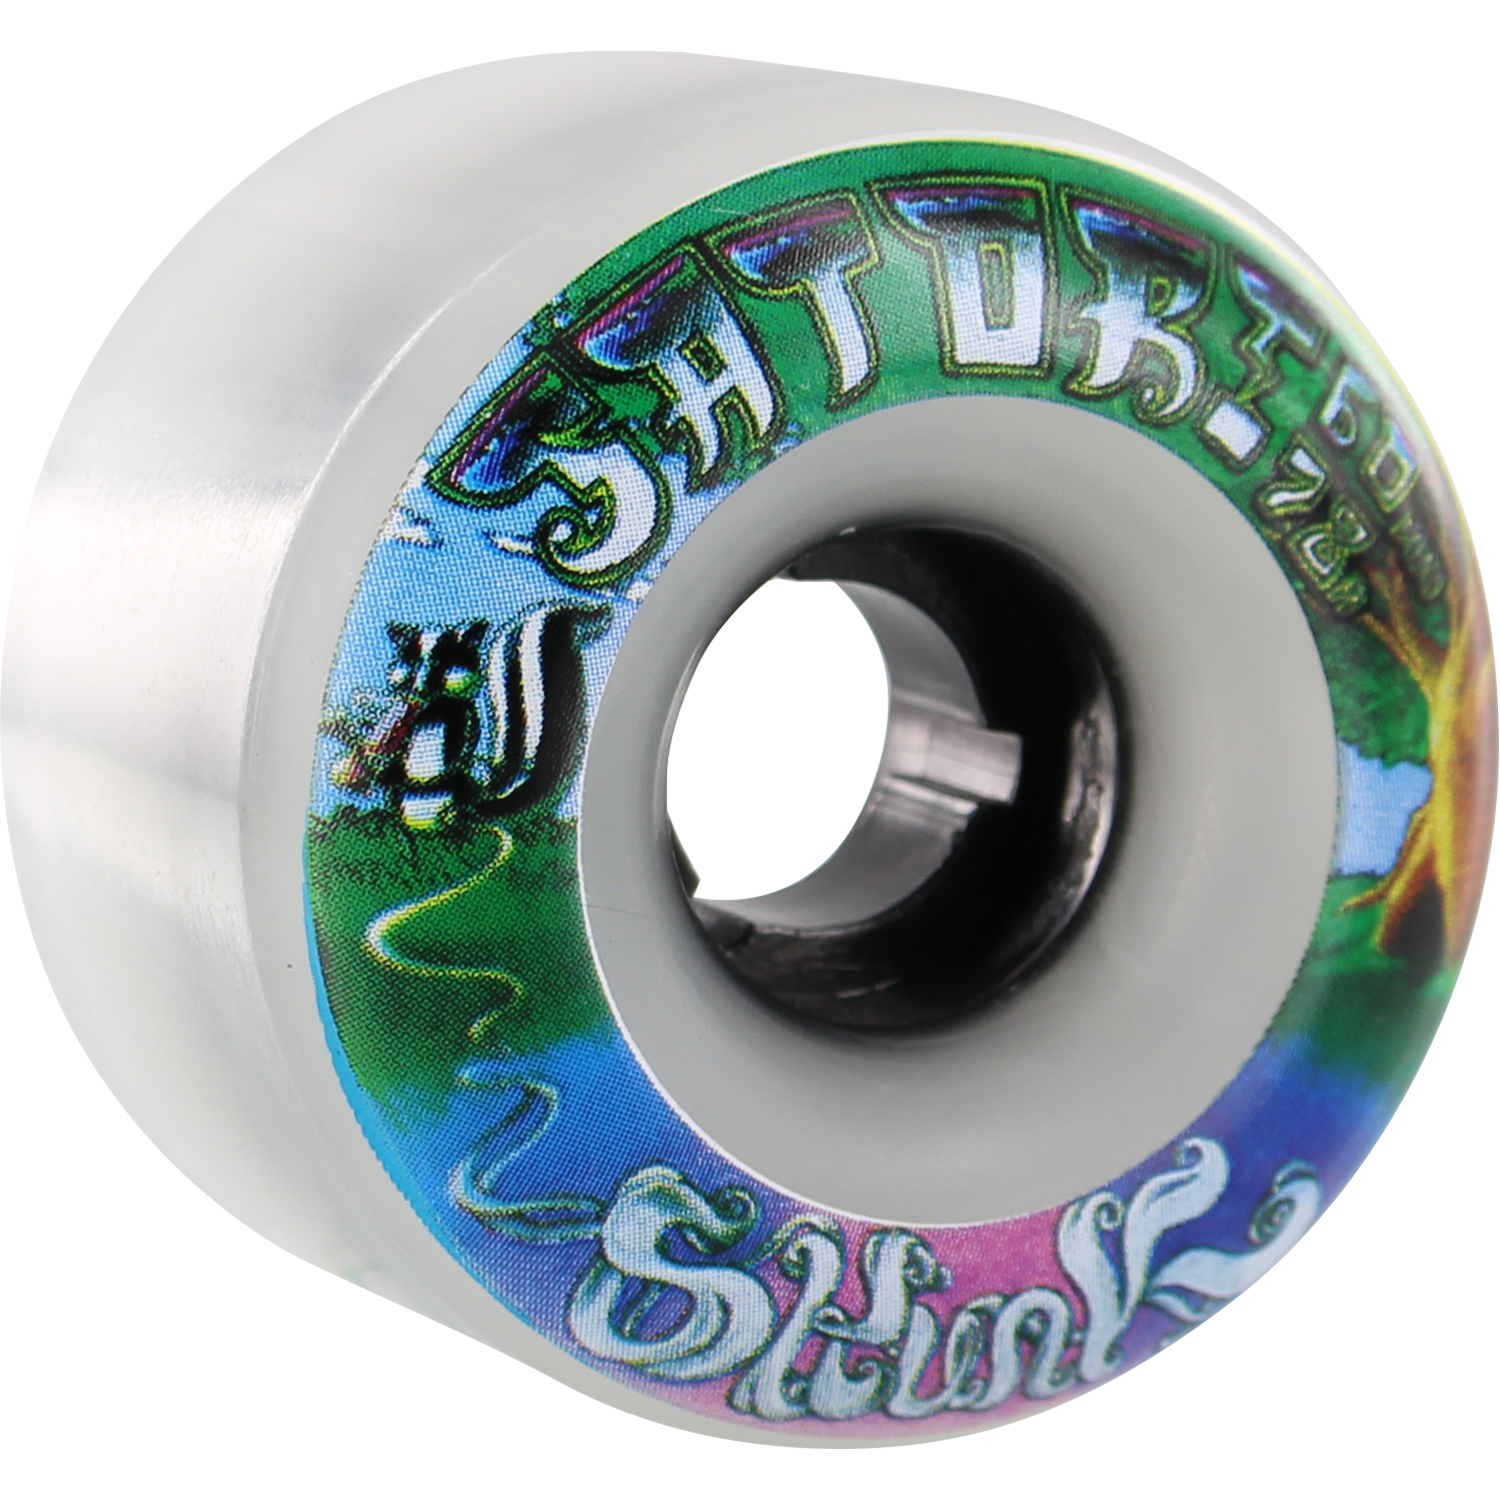 Satori Goo Ball Skunk 60mm 78a Clear White Skateboard Wheels (Set of 4)